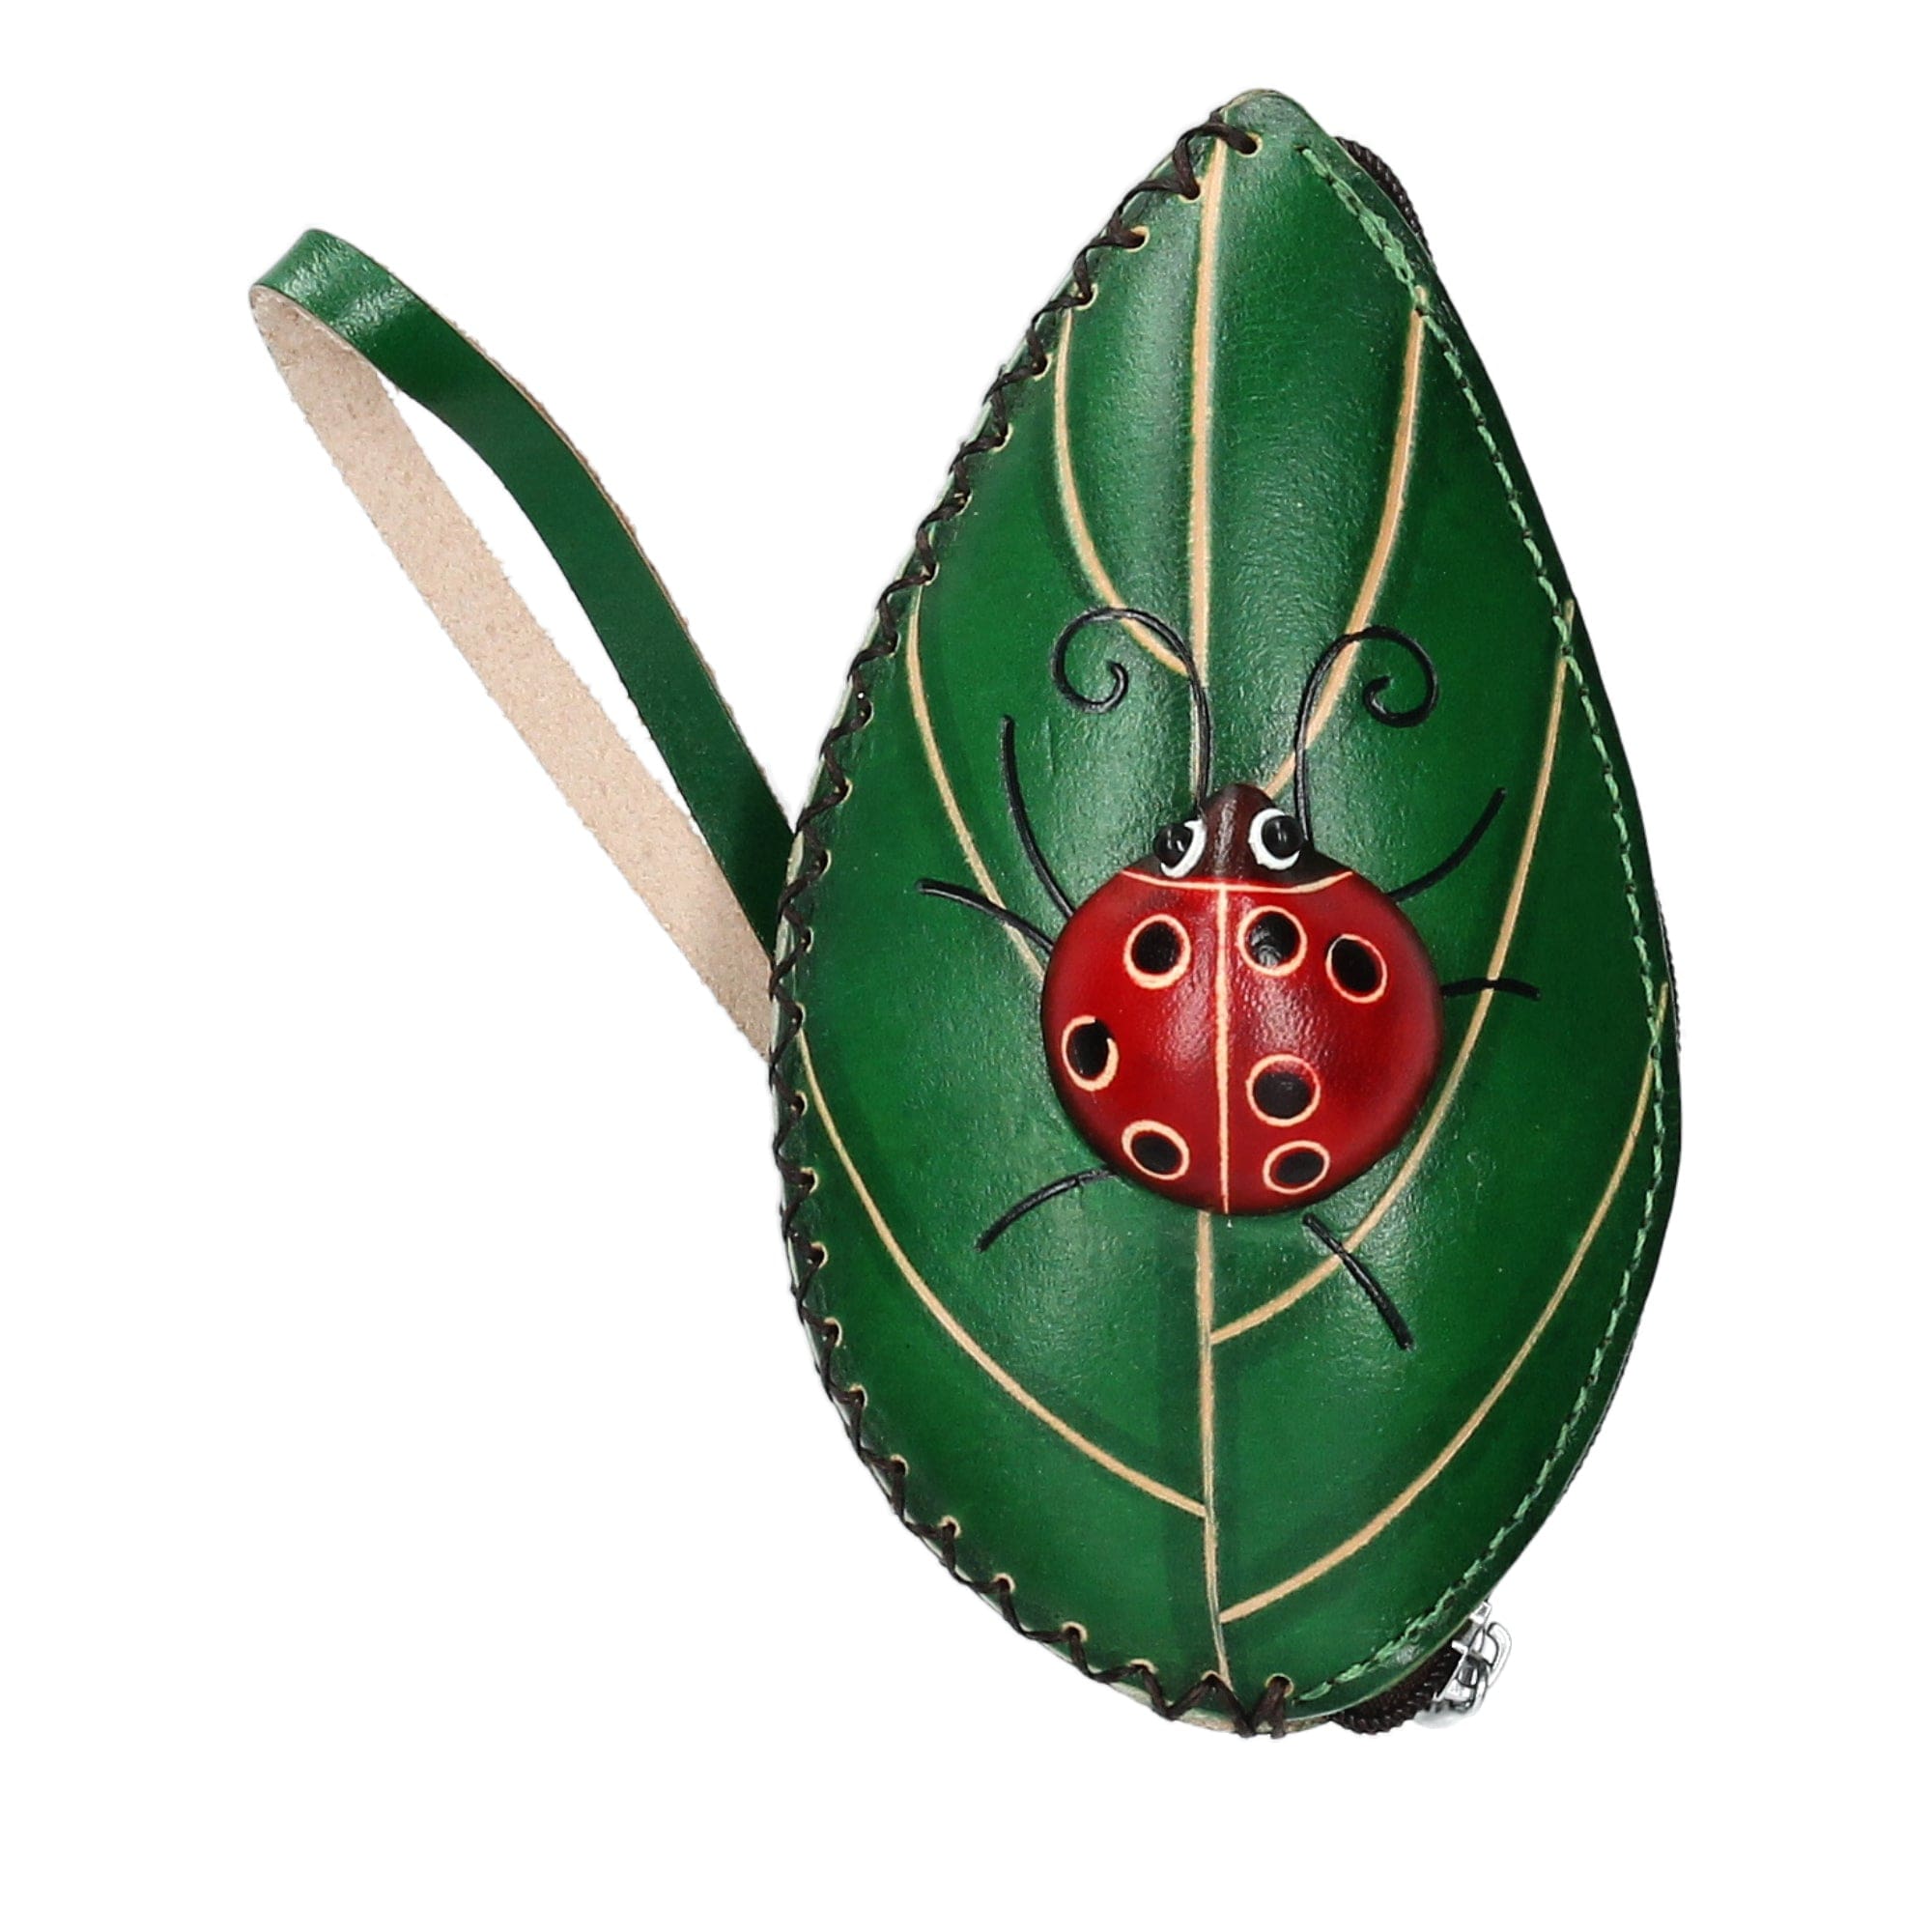 Baratijas de cuero - Verde - Pequeña marroquinería